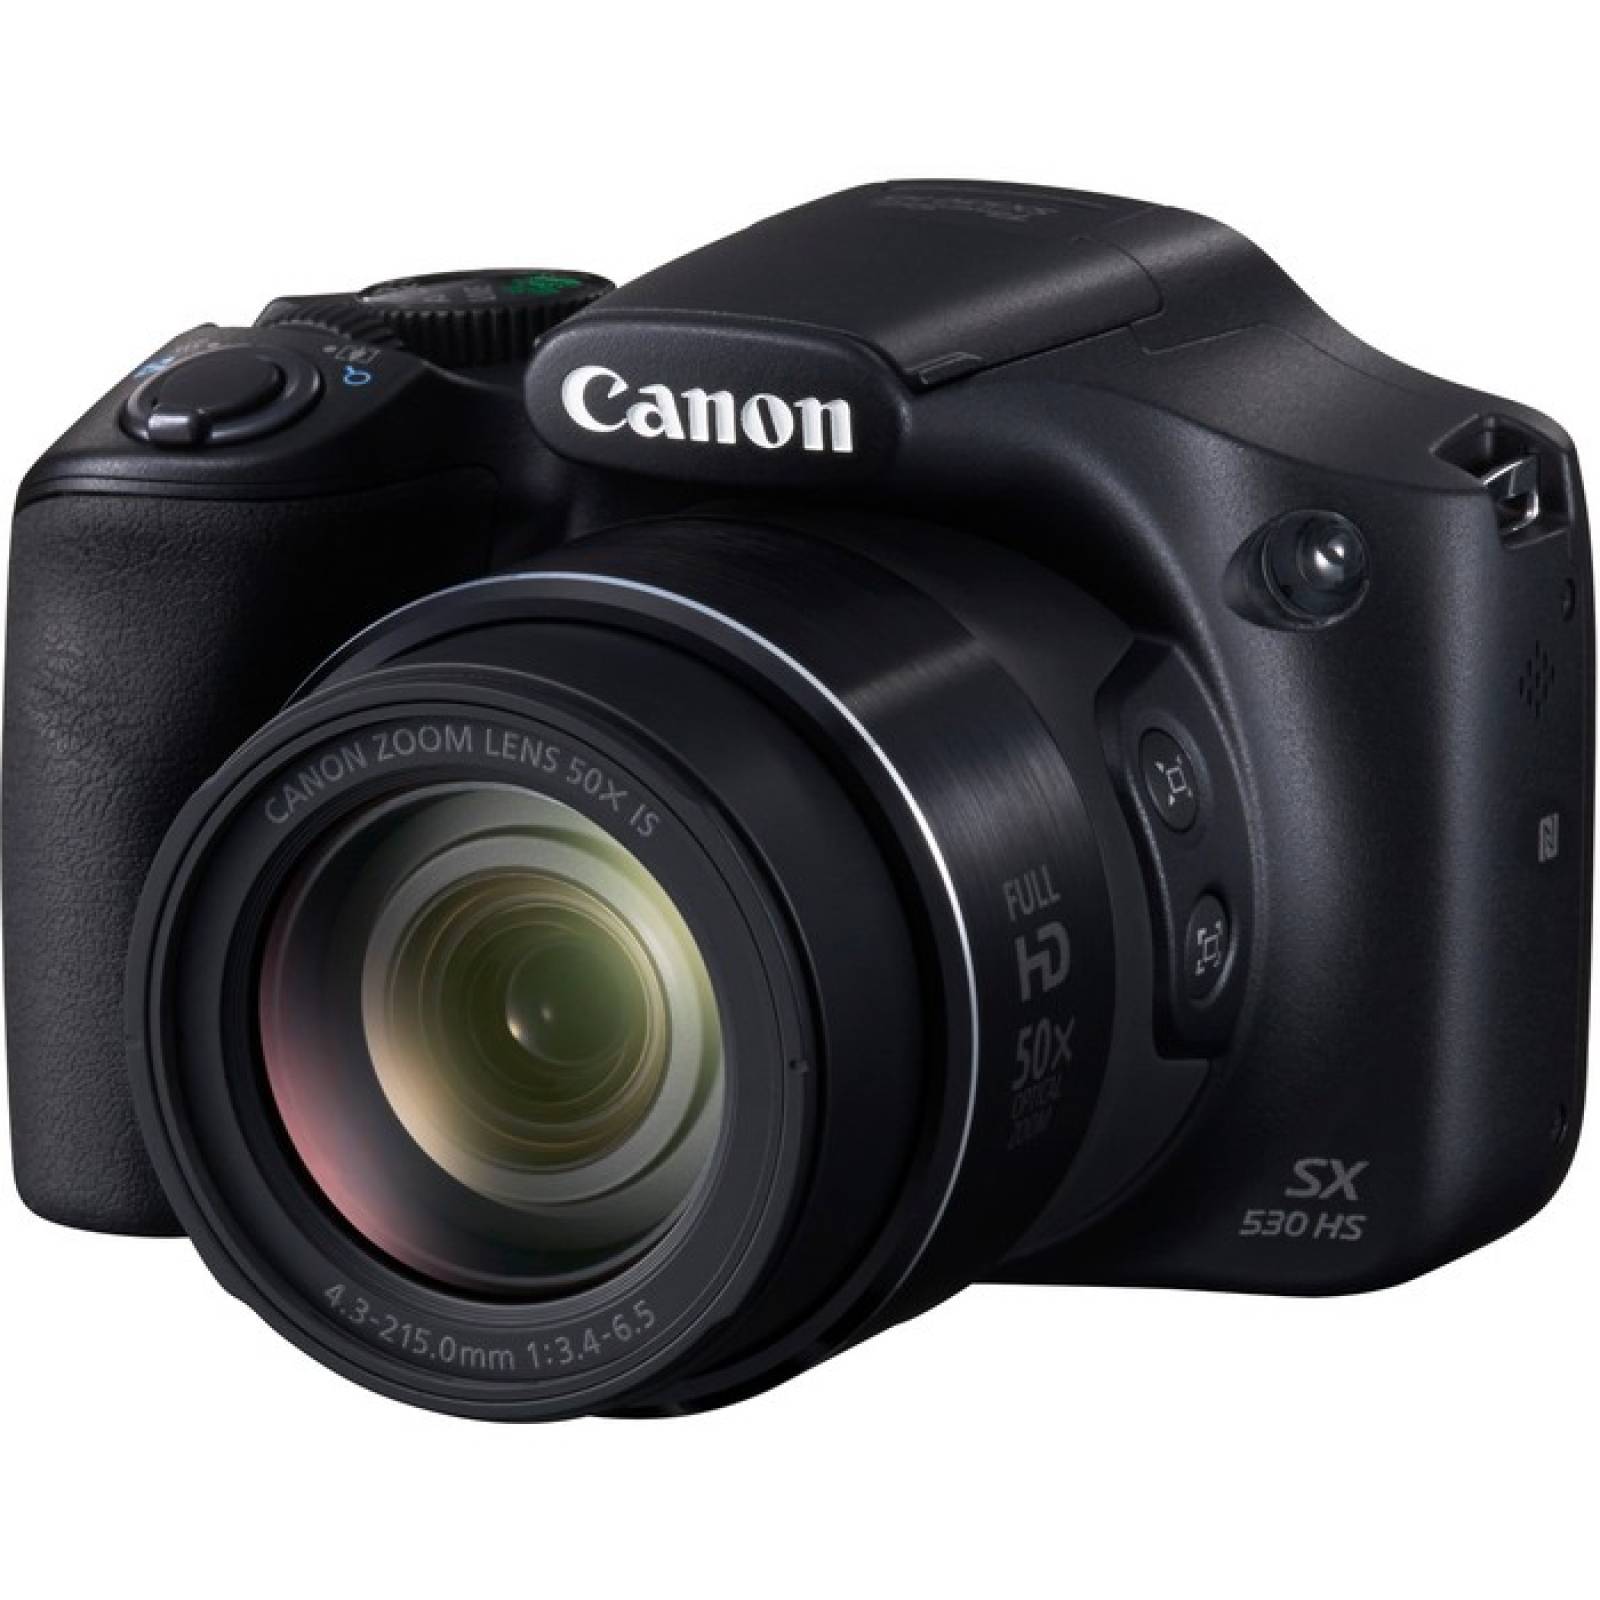 Cmara compacta Canon PowerShot SX530 HS de 16 megapxeles  Negro